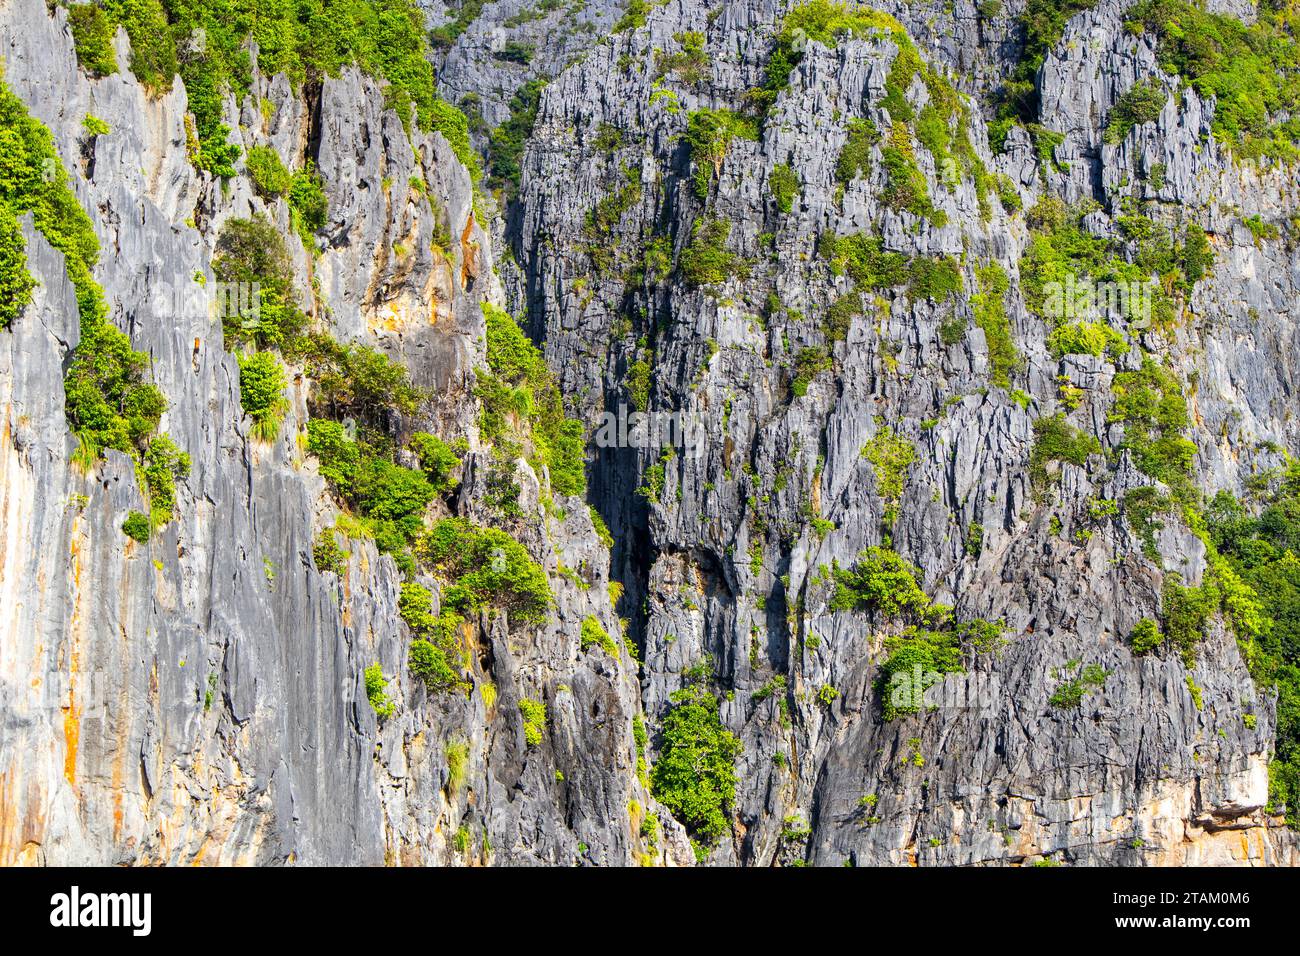 Ein detaillierter Blick auf die grünen Felsen in Maya Bay auf den Phi Phi Inseln - einer der berühmtesten Orte in Thailand Stockfoto